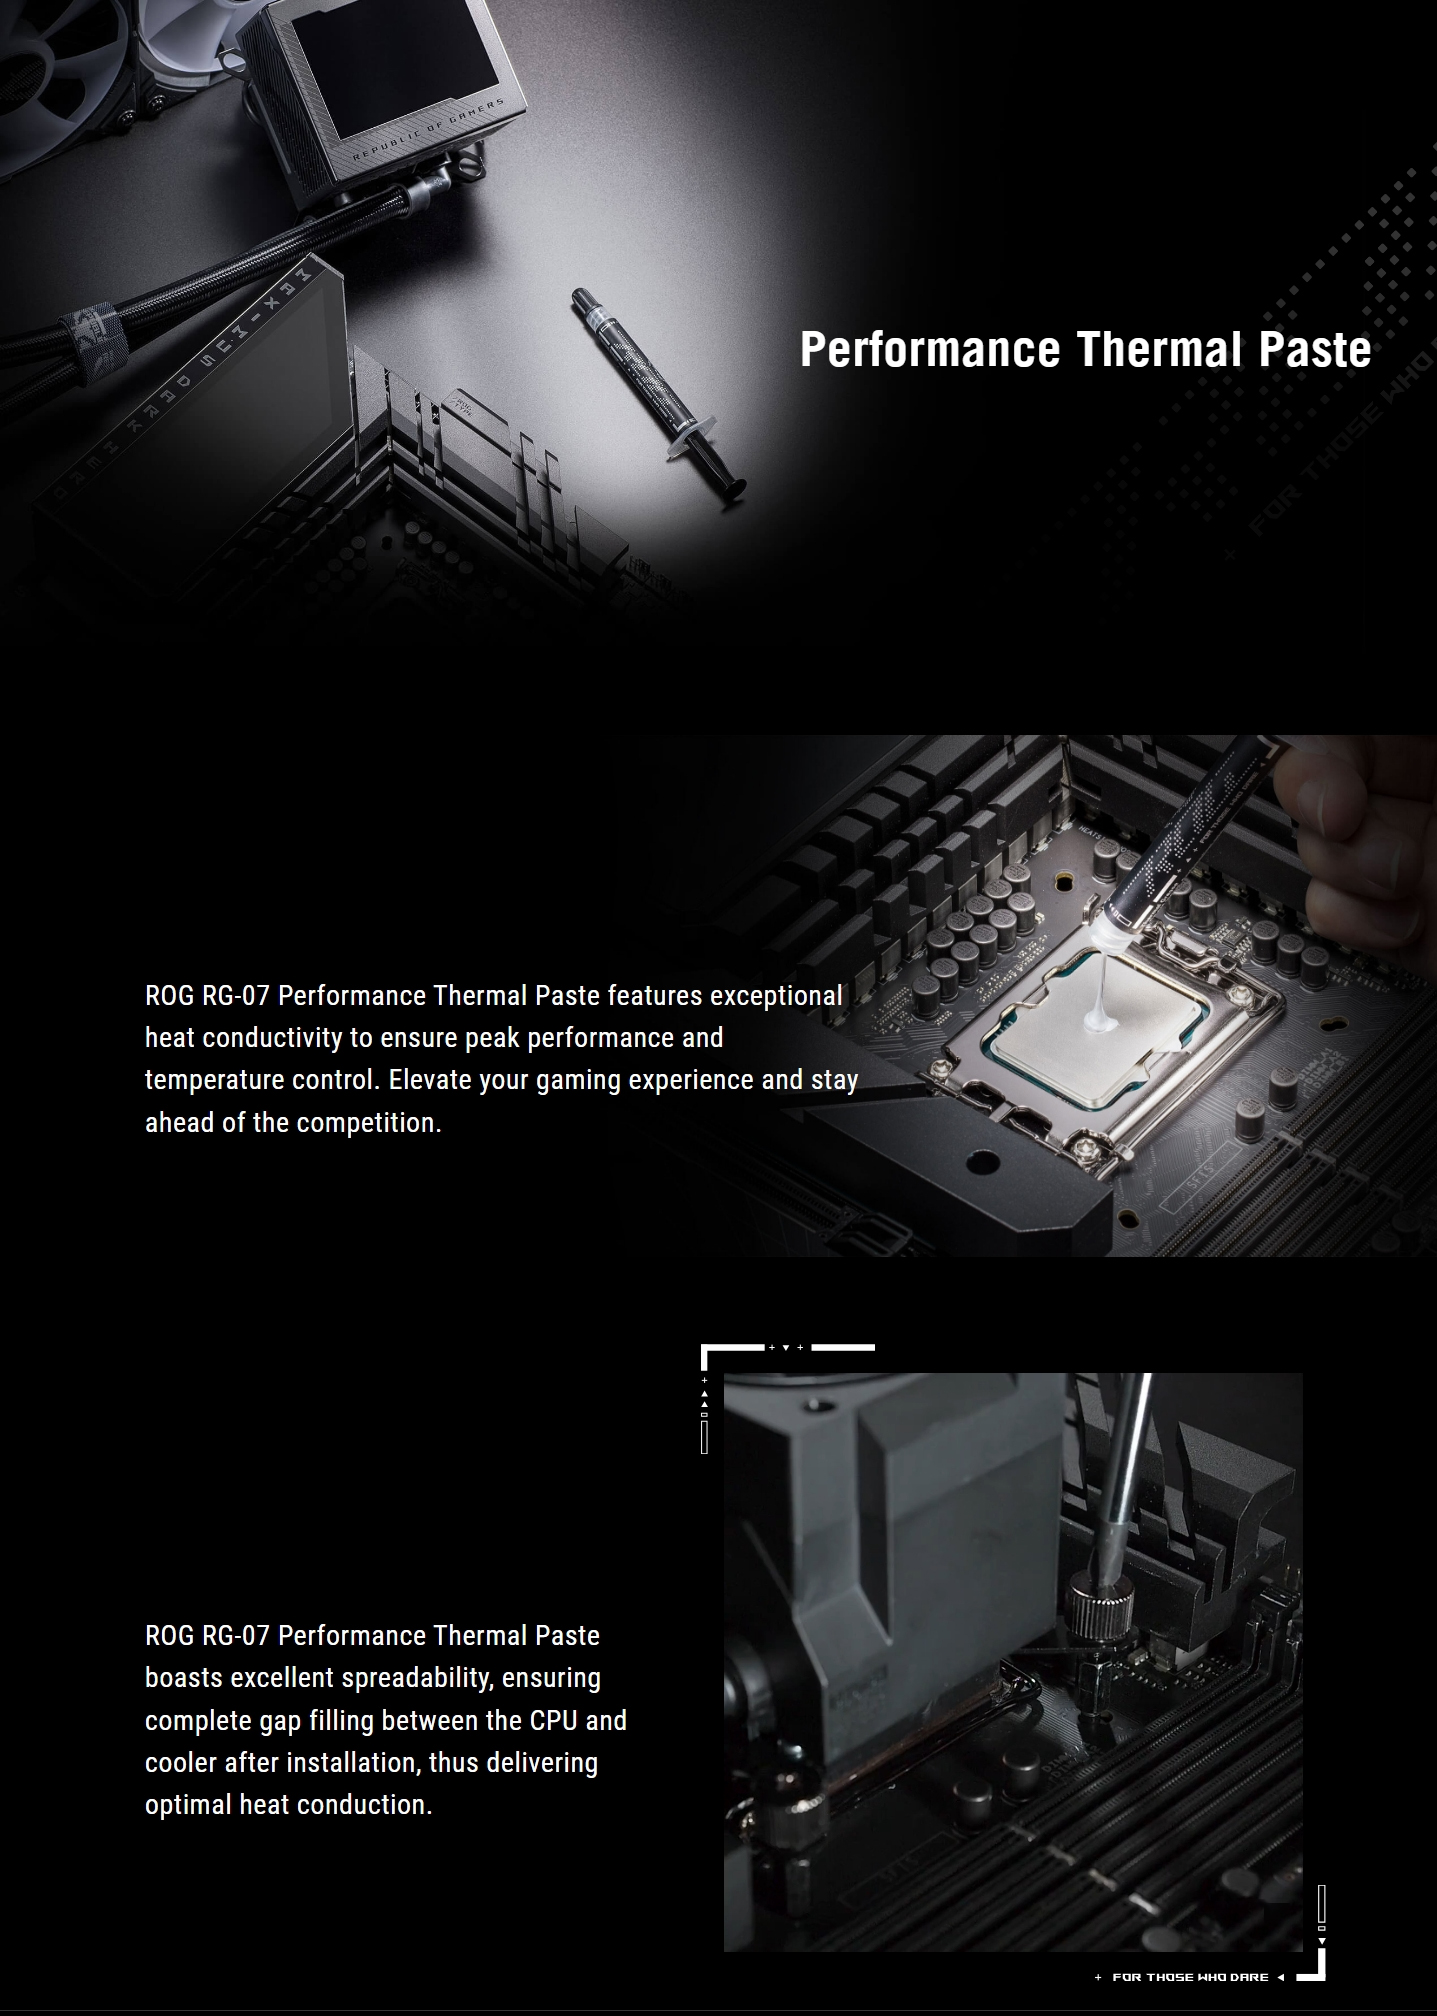 Asus-Performance-Thermal-Paste-Kit-ROG-RG-07-6